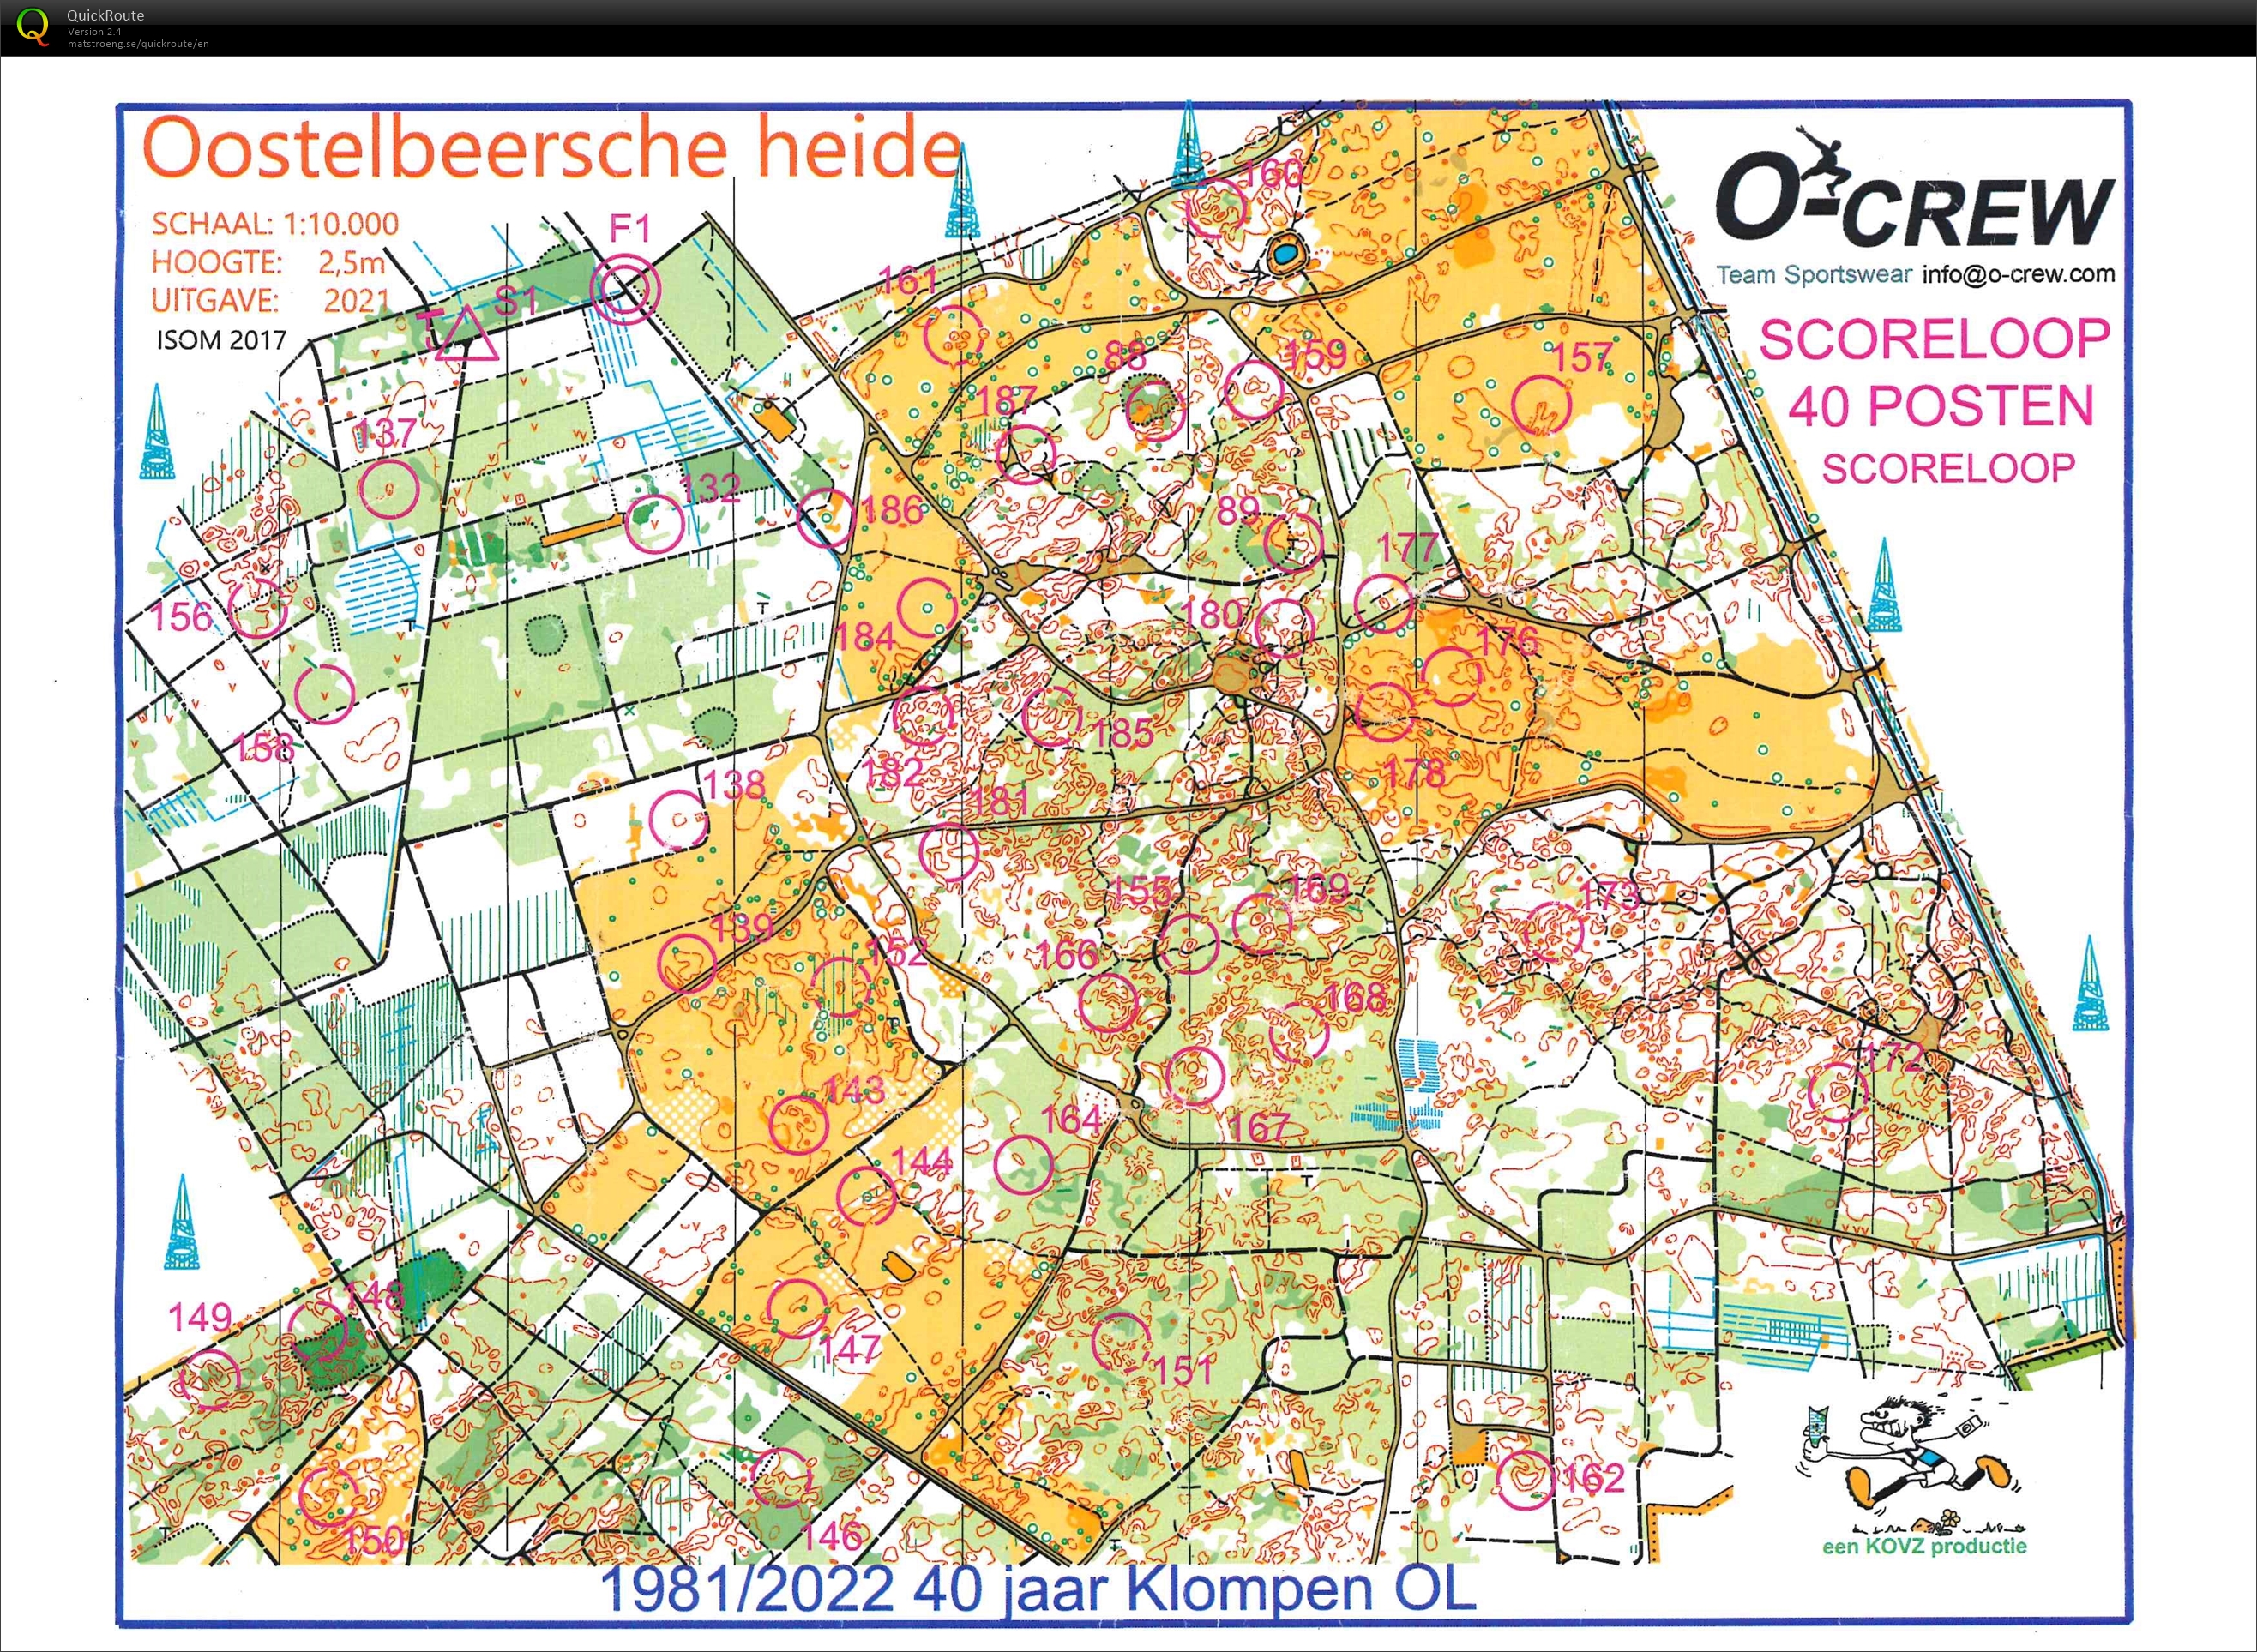 Scoreloop Oostelbeersche Heide (06/11/2022)